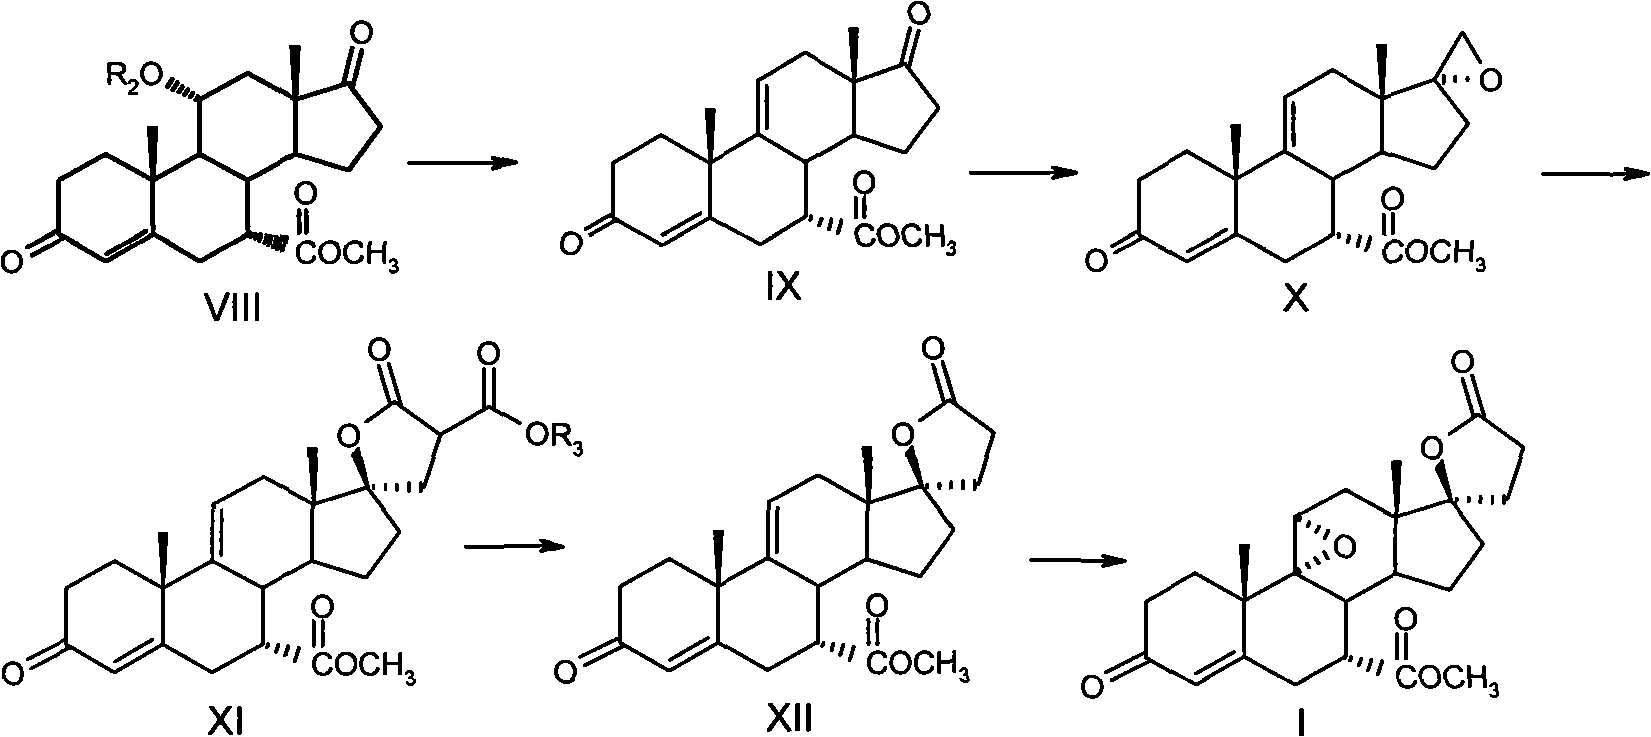 Method for synthesizing eplerenone